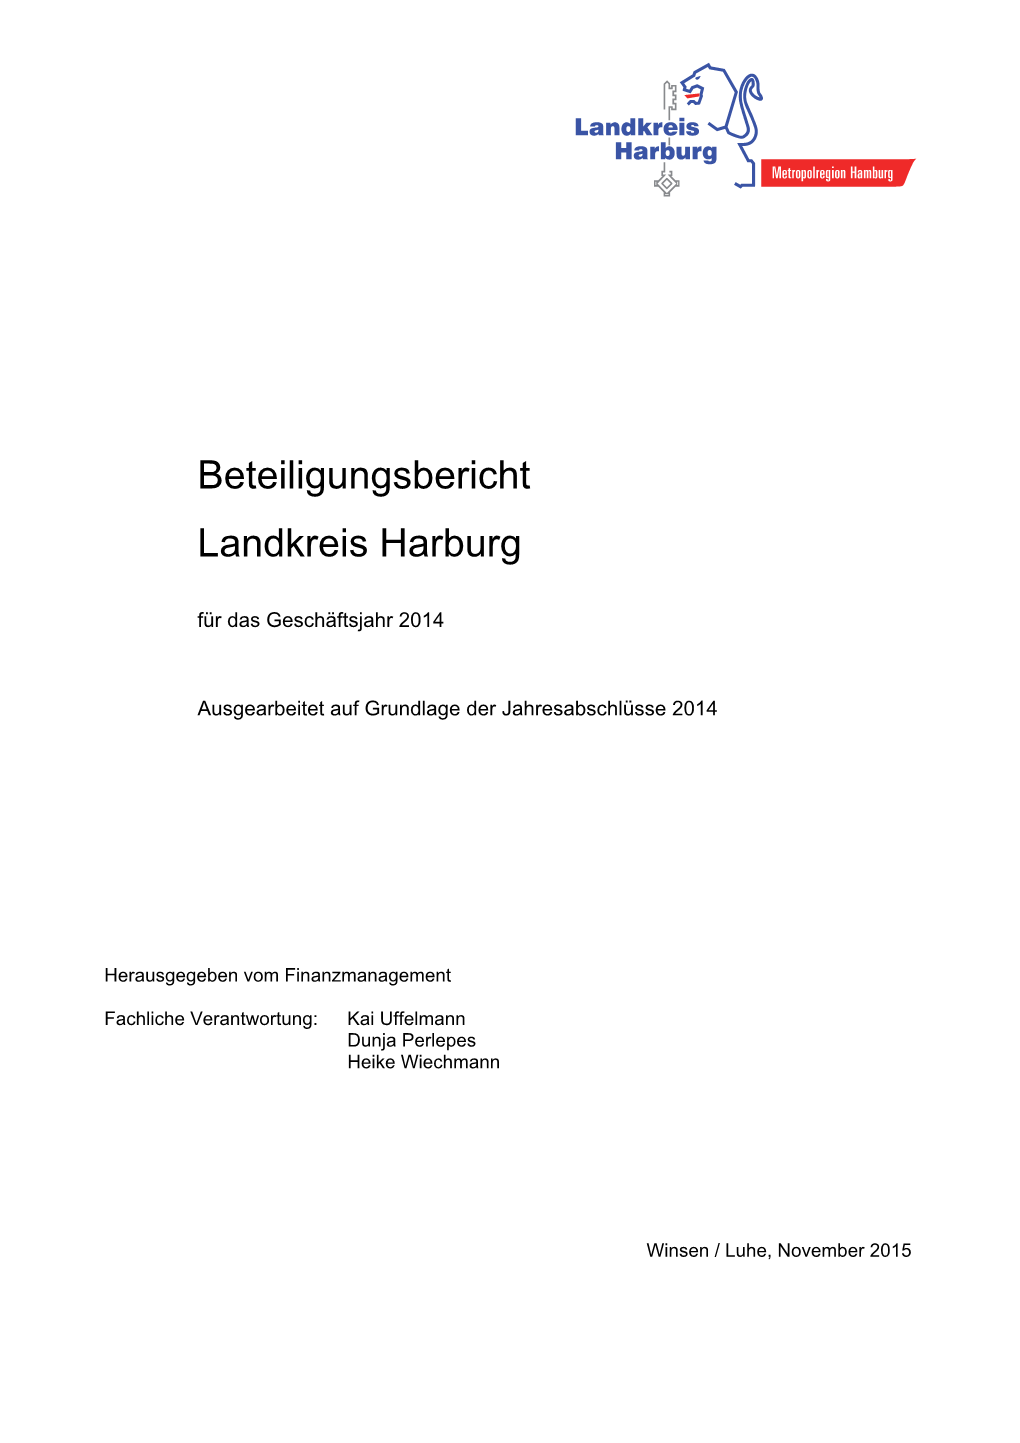 Beteiligungsbericht Landkreis Harburg